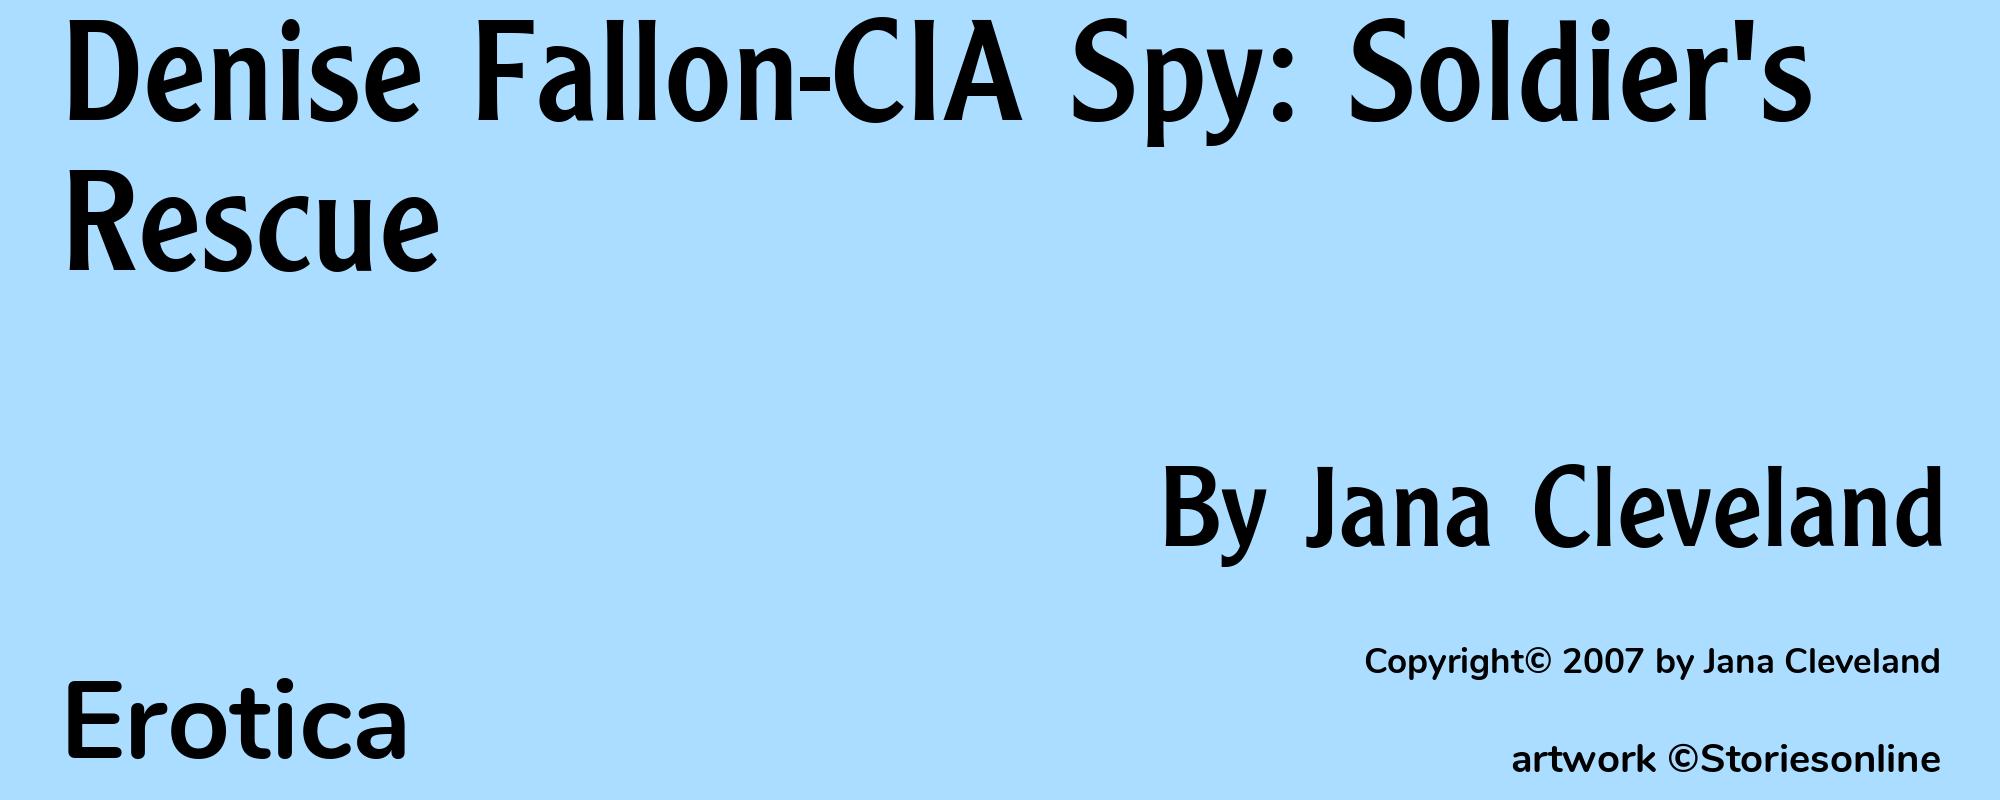 Denise Fallon-CIA Spy: Soldier's Rescue - Cover